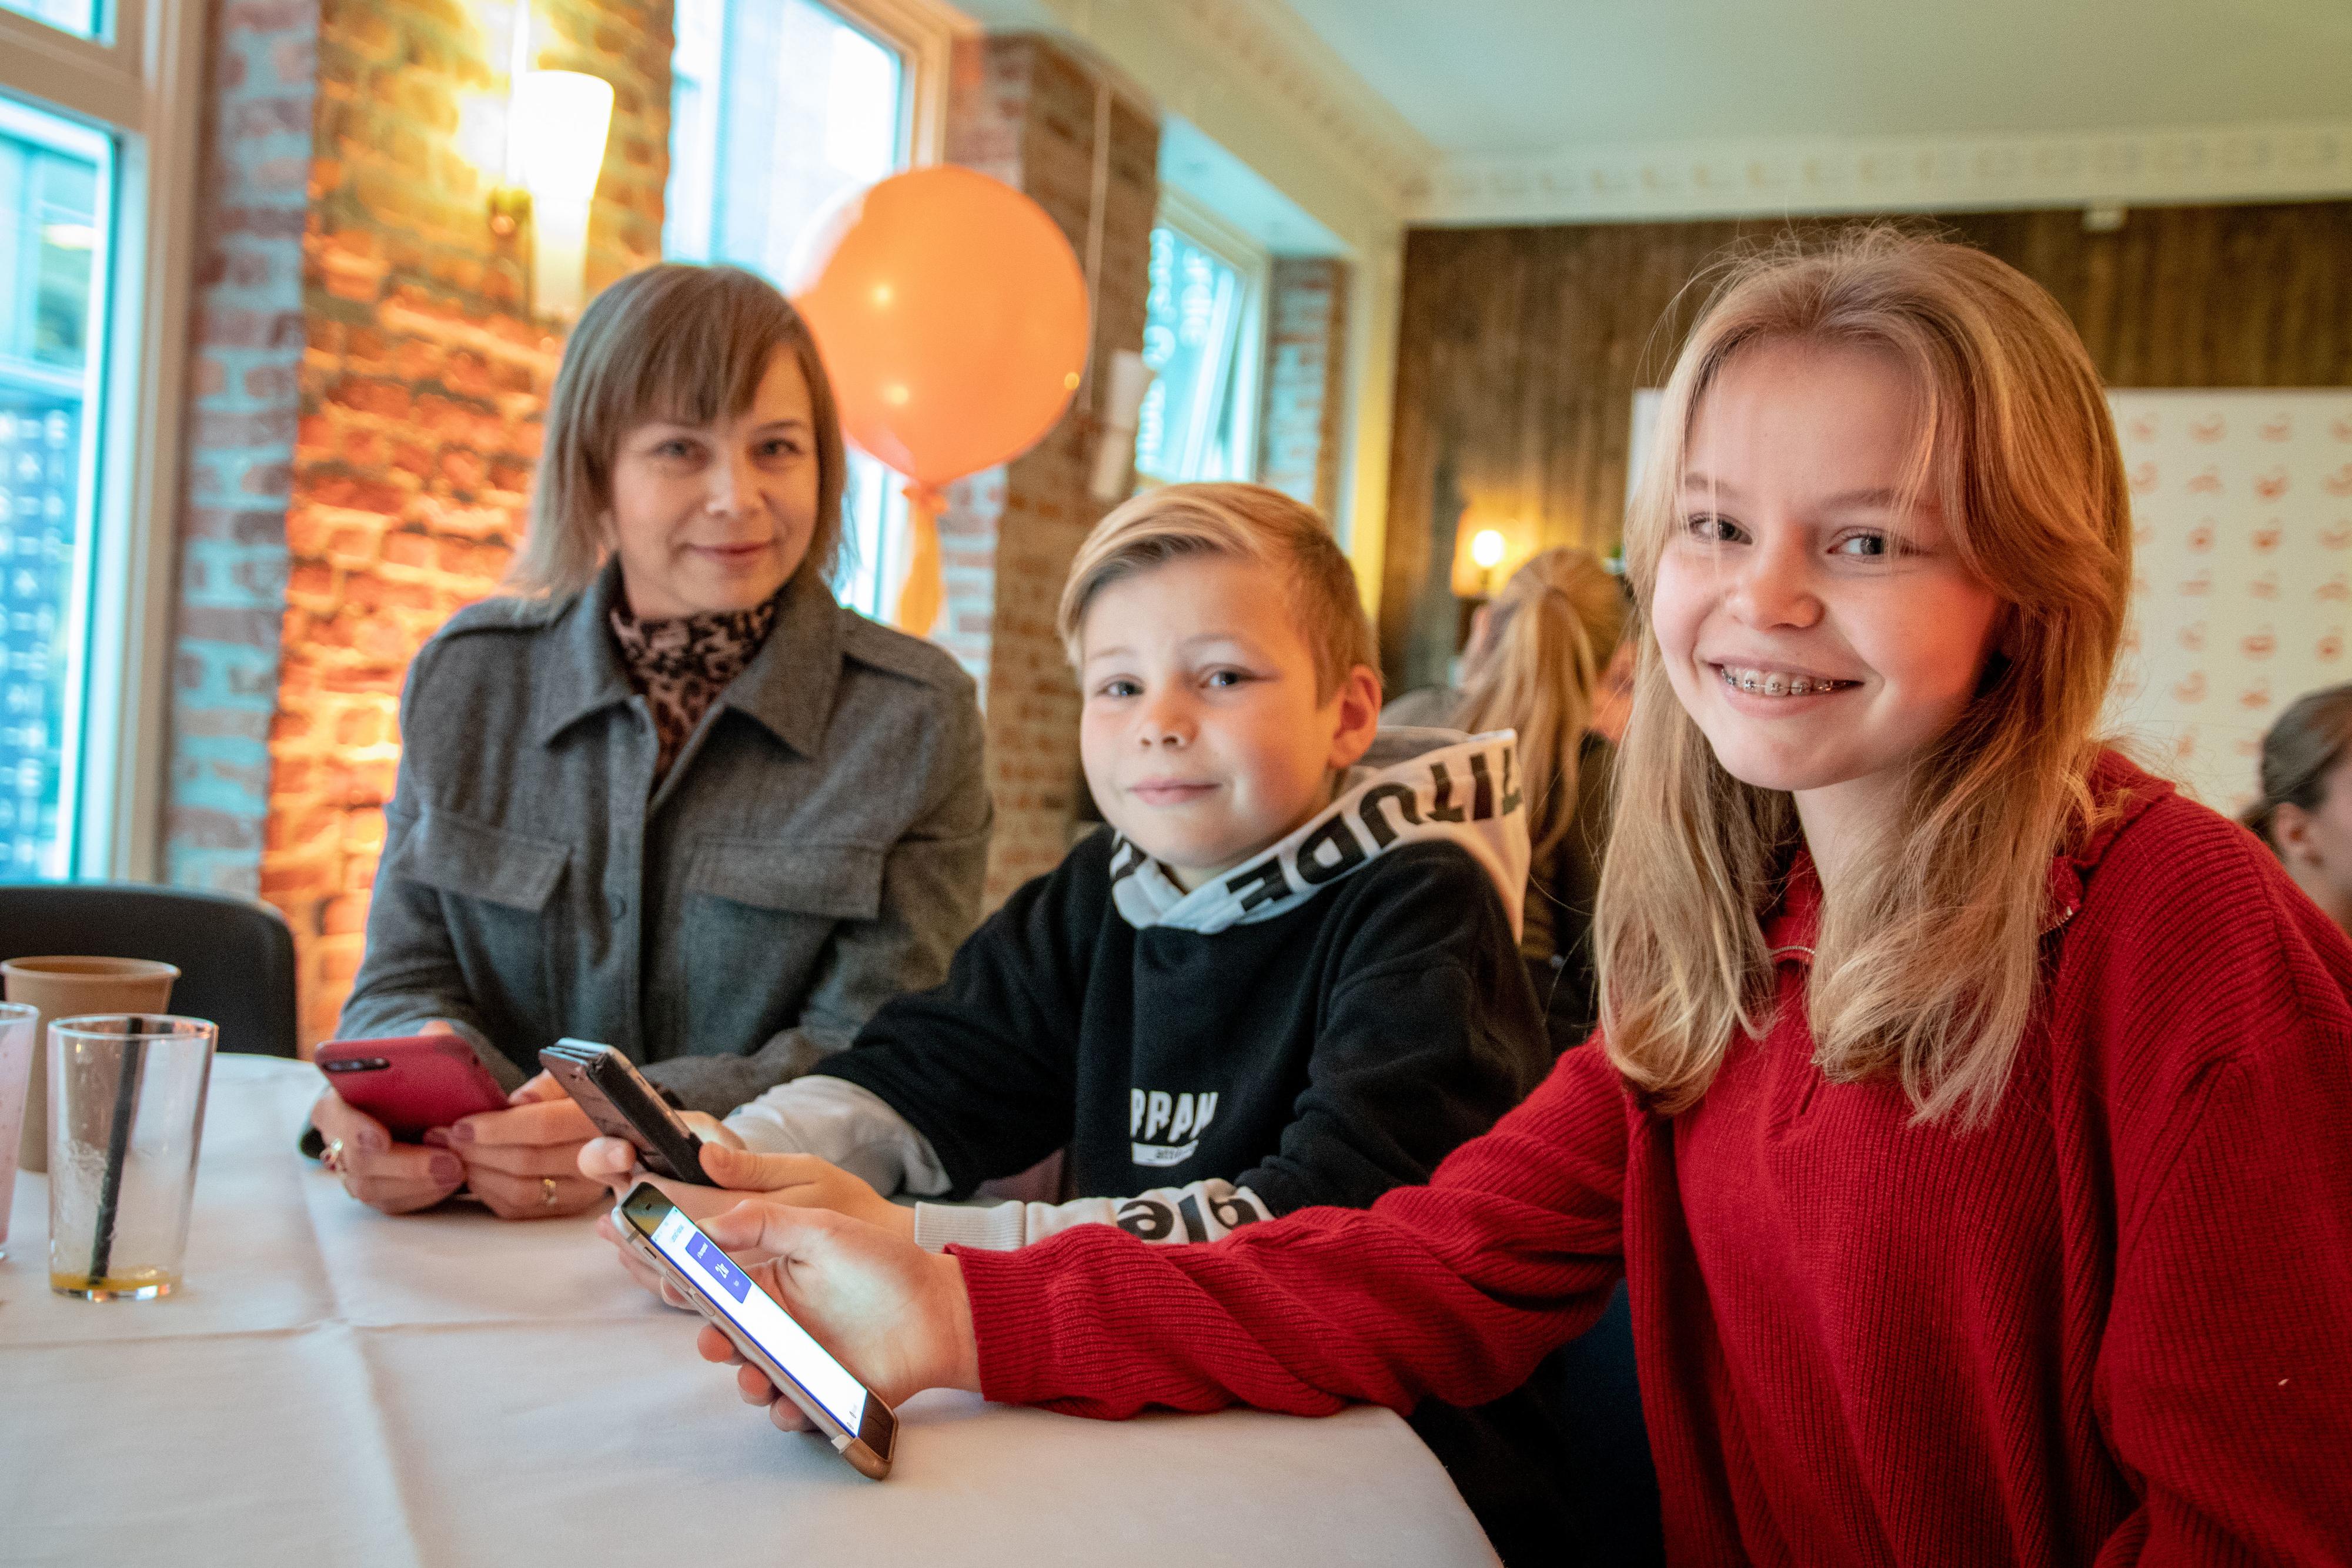 Ingebjørg Øra og barna Leonard Fageraas (11) og Lila Pauline fageraas (13) har hjulpet til med å teste ut den nye Vipps-appen.